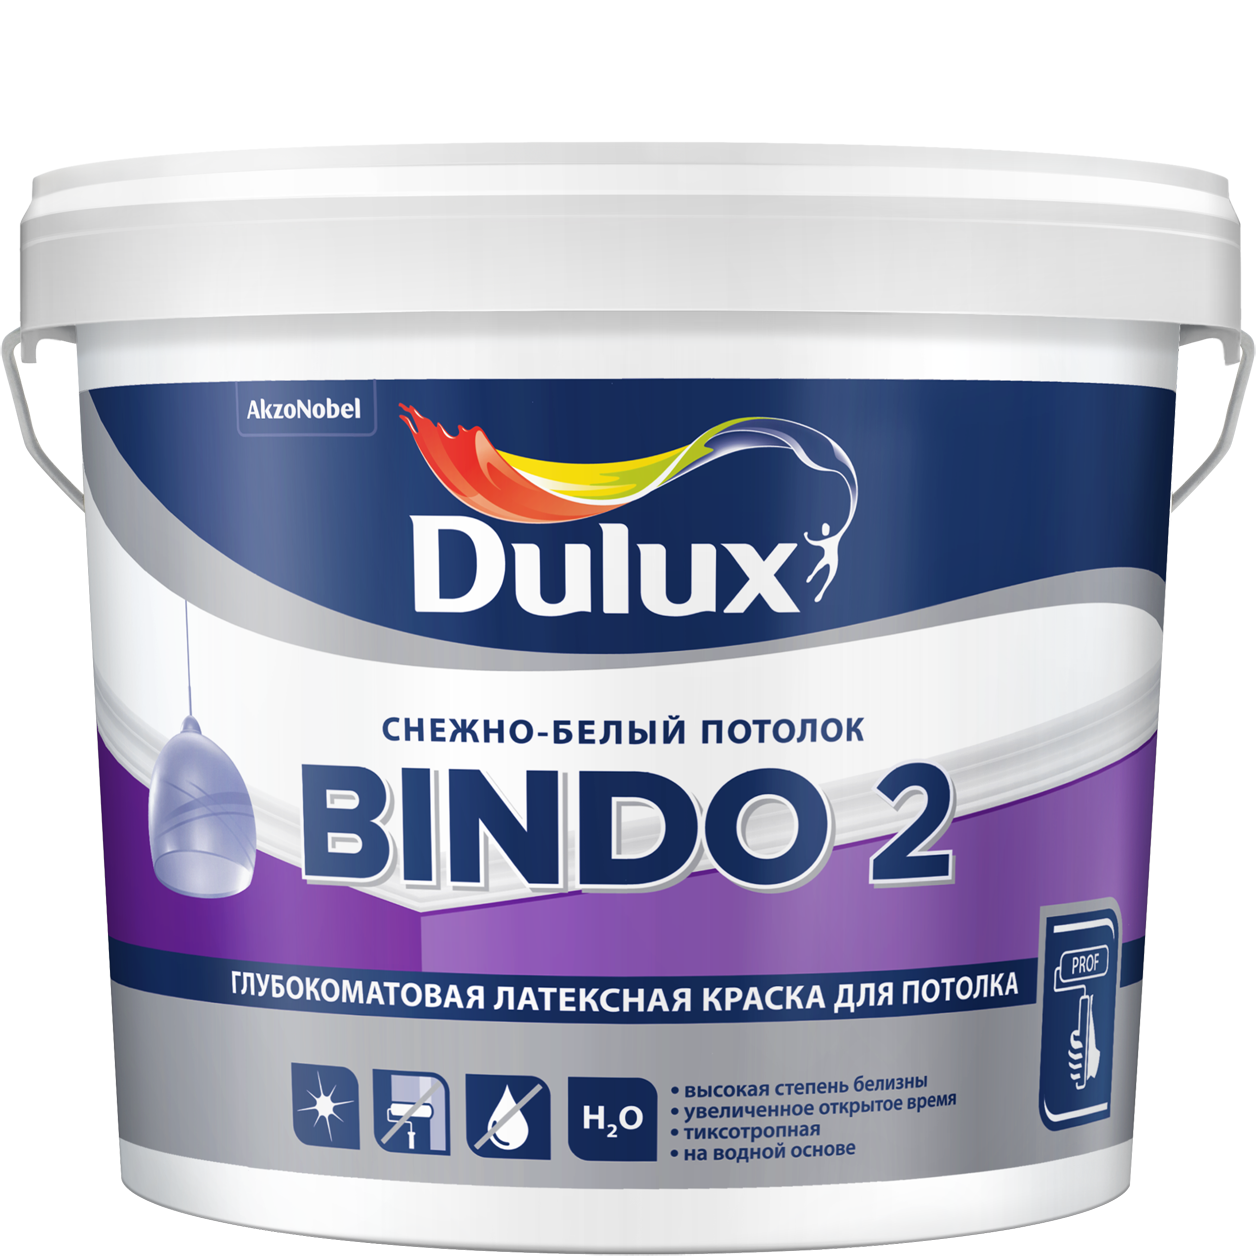 Краска Дьюлакс Биндо-2/Dulux Bindo 2 белоснежная, для потолков и стен купить Коломна, цена, отзывы. Фото N2